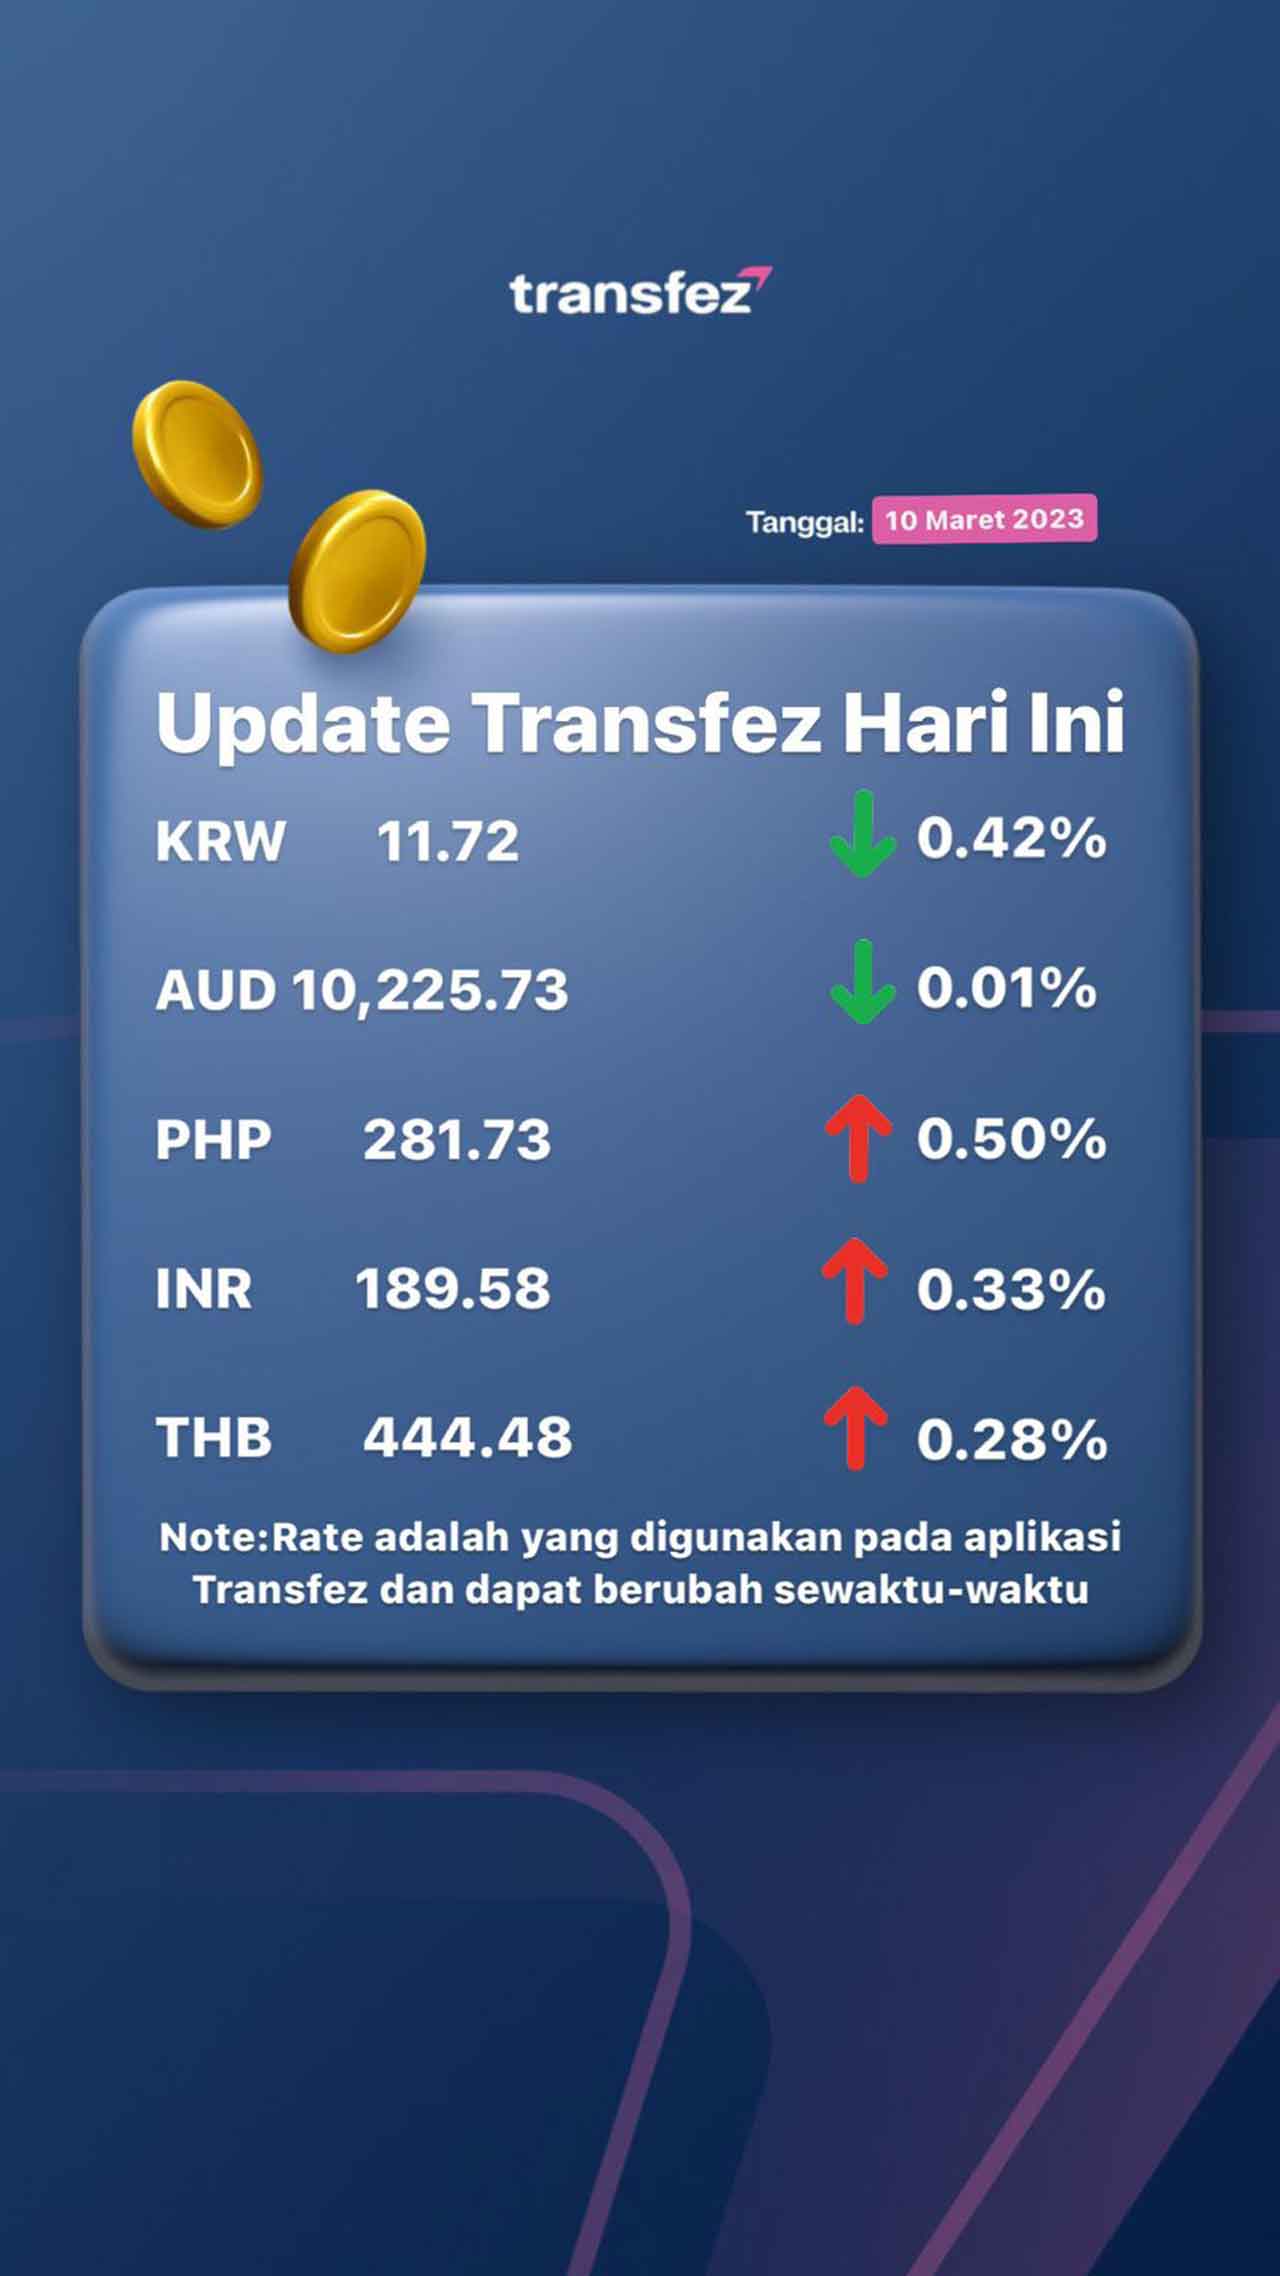 Update Rate Transfez Hari Ini 10 Maret 2023